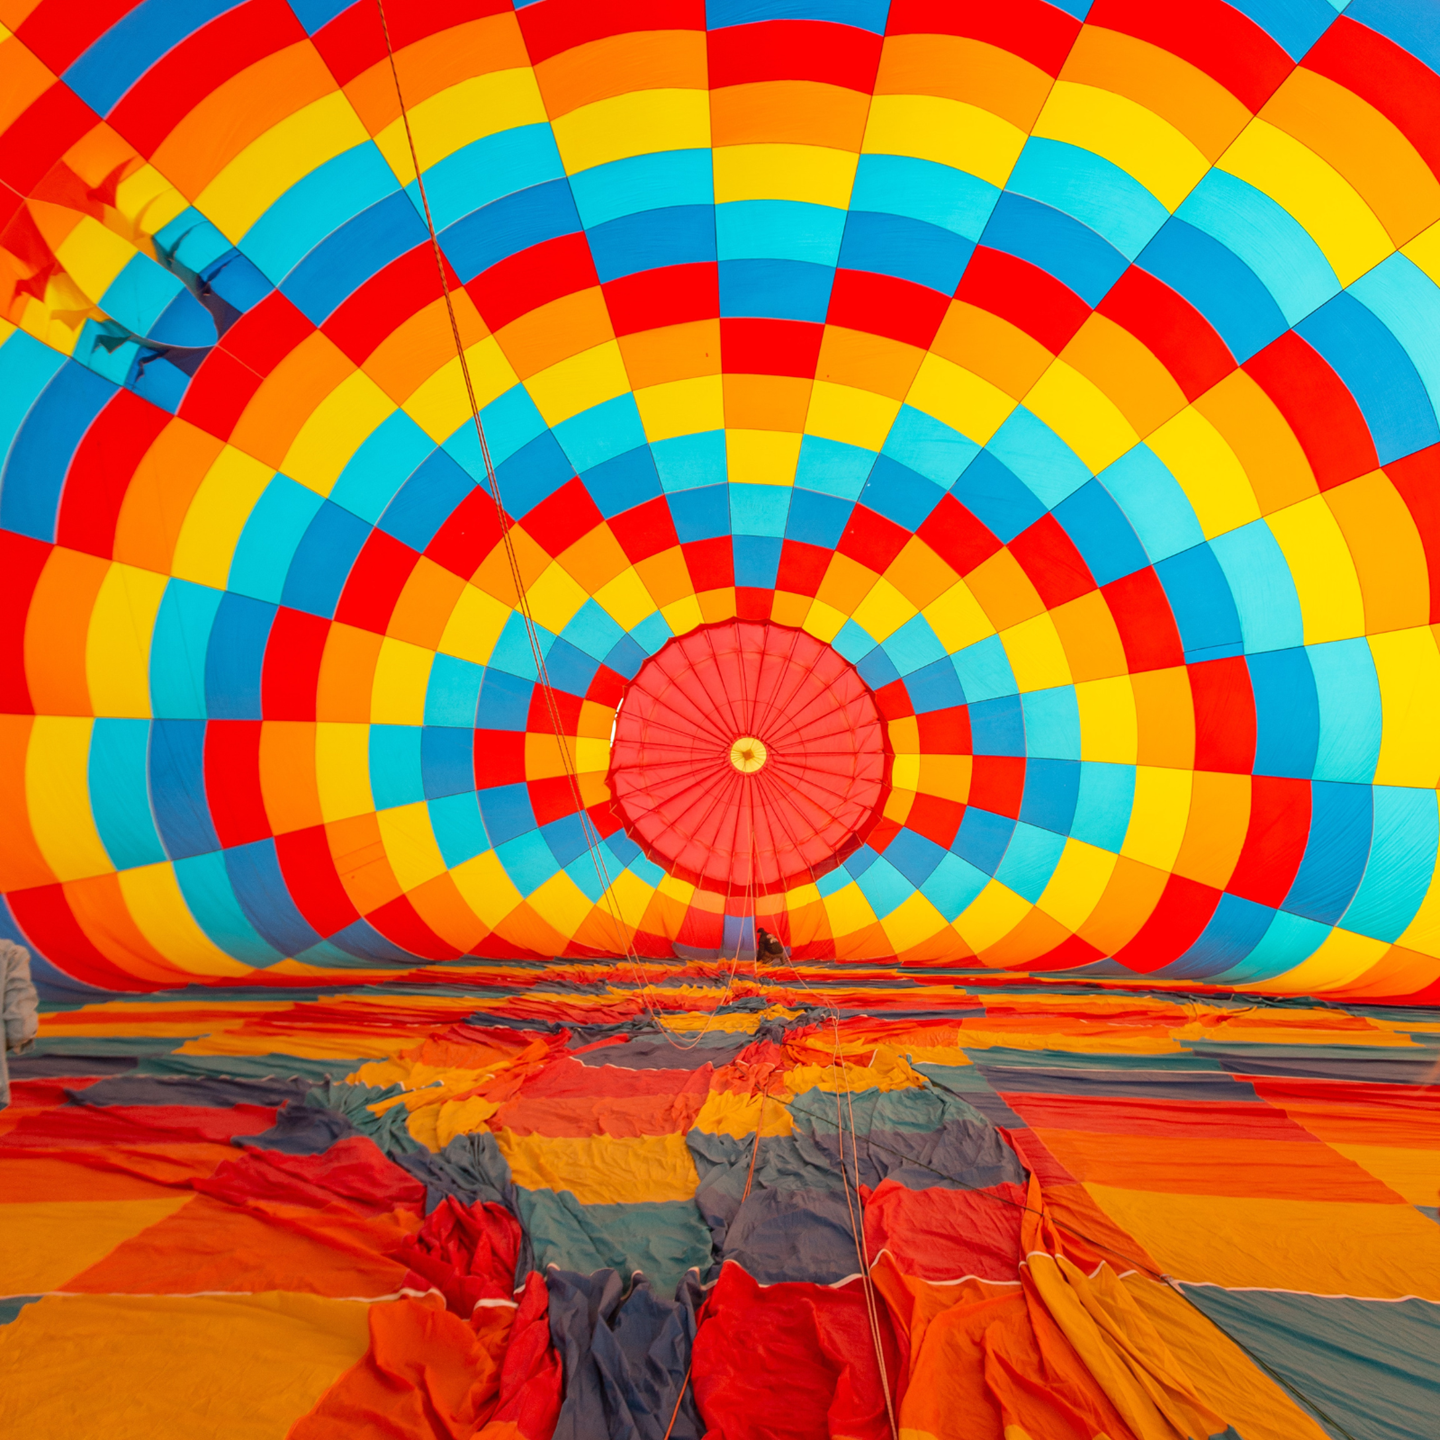 Interior of a hot air balloon